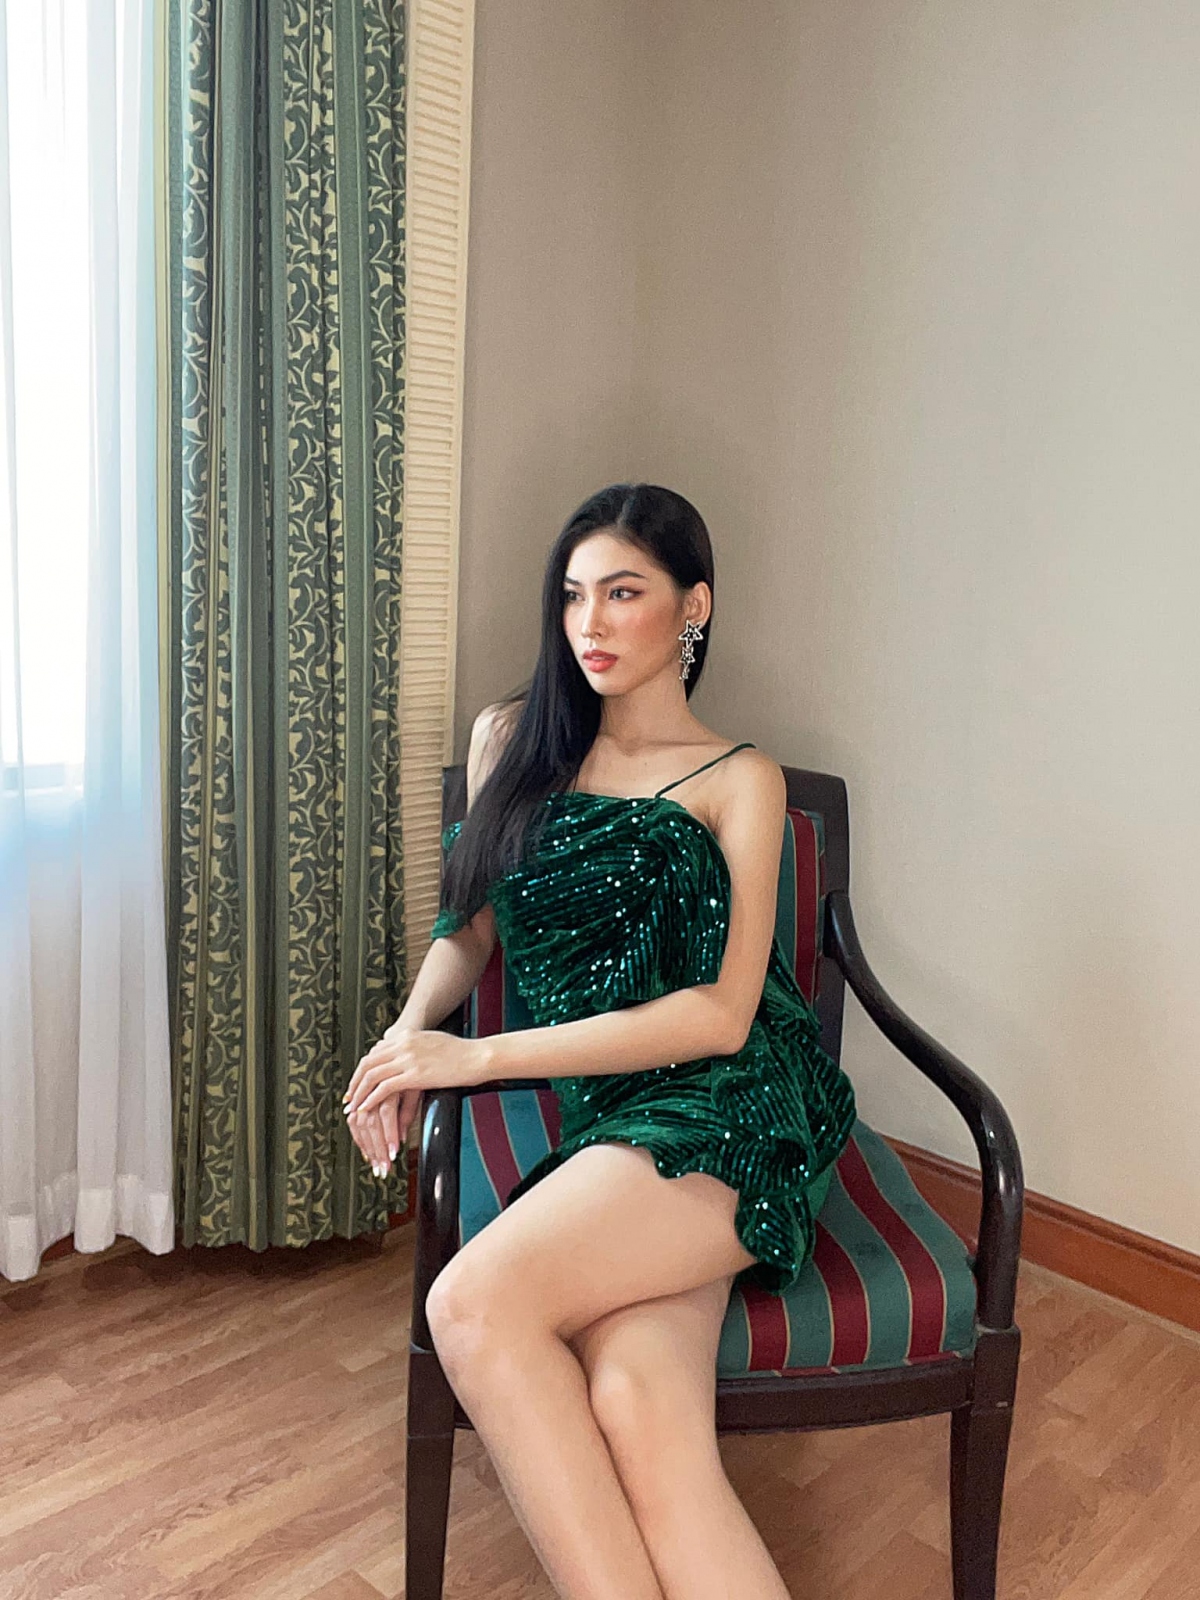 Không hổ danh là Á hậu sắc sảo của Hoa hậu Việt Nam 2020, Ngọc Thảo liên tục sáng tạo ra những bộ ảnh “sang chảnh” trong phòng cách ly khiến cộng đồng mạng vô cùng thích thú và từ đó cô cũng nhận được nhiều lượng tương tác và sự quan tâm của khán giả.